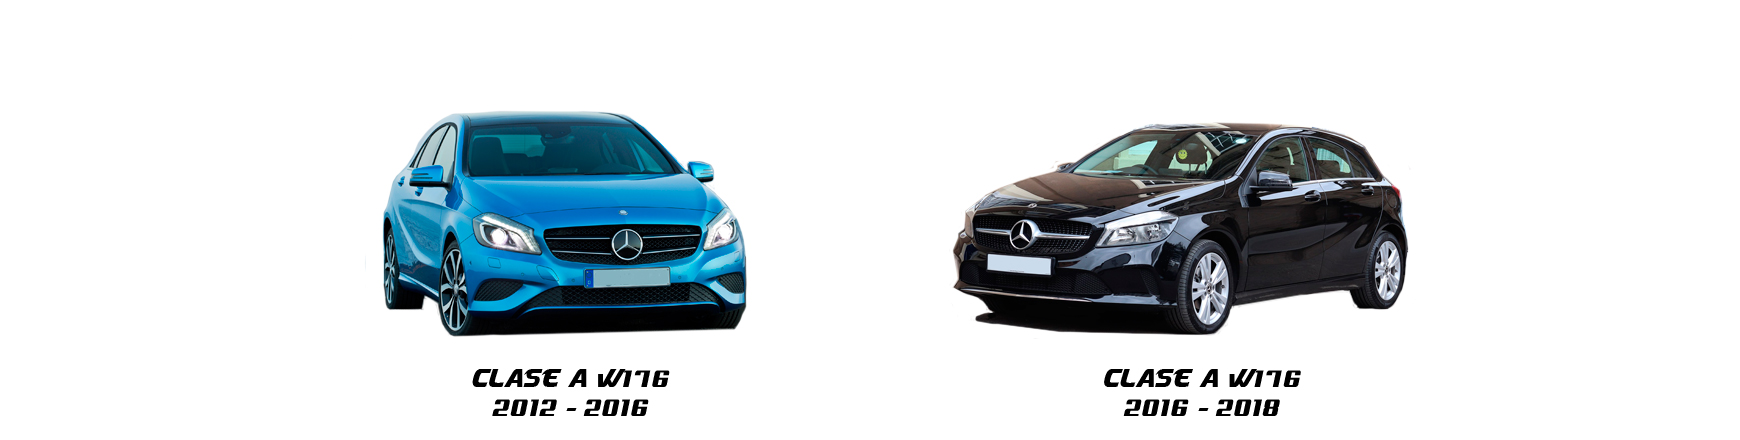 Piezas y Recambios de Mercedes Clase A (W176) de 2012 a 2015 | Veramauto.es